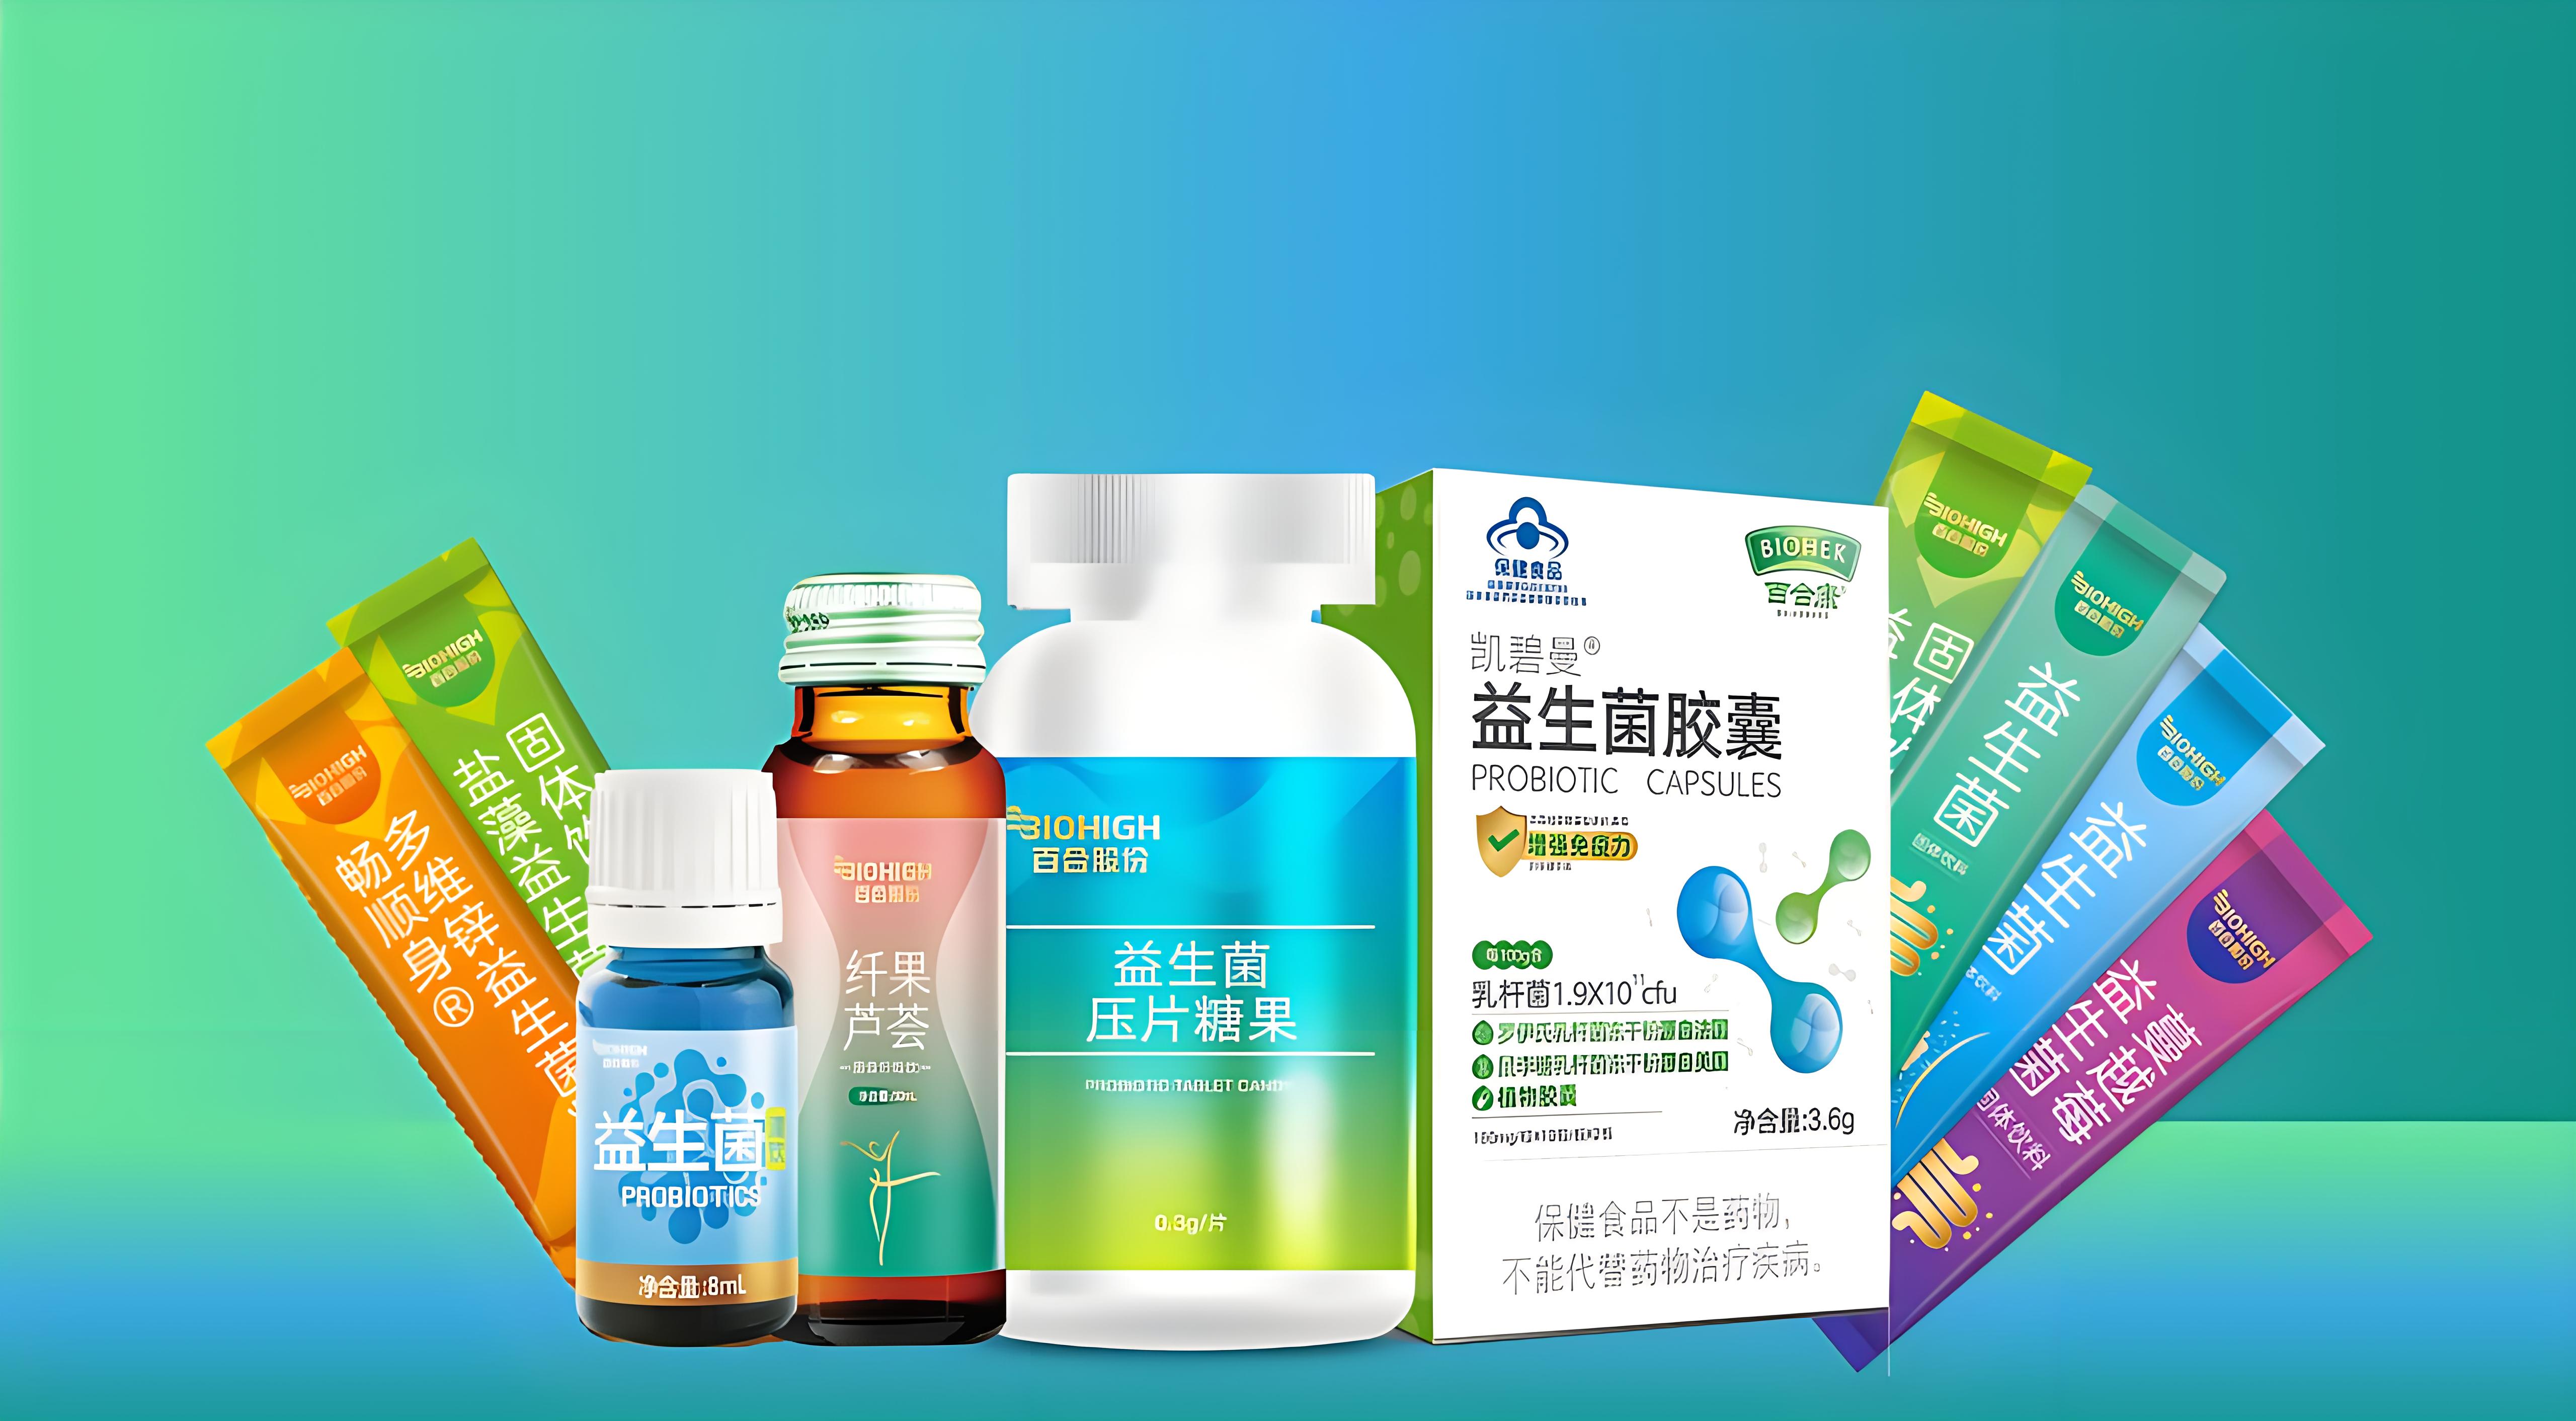 营养保健品在上海市场的营销策略